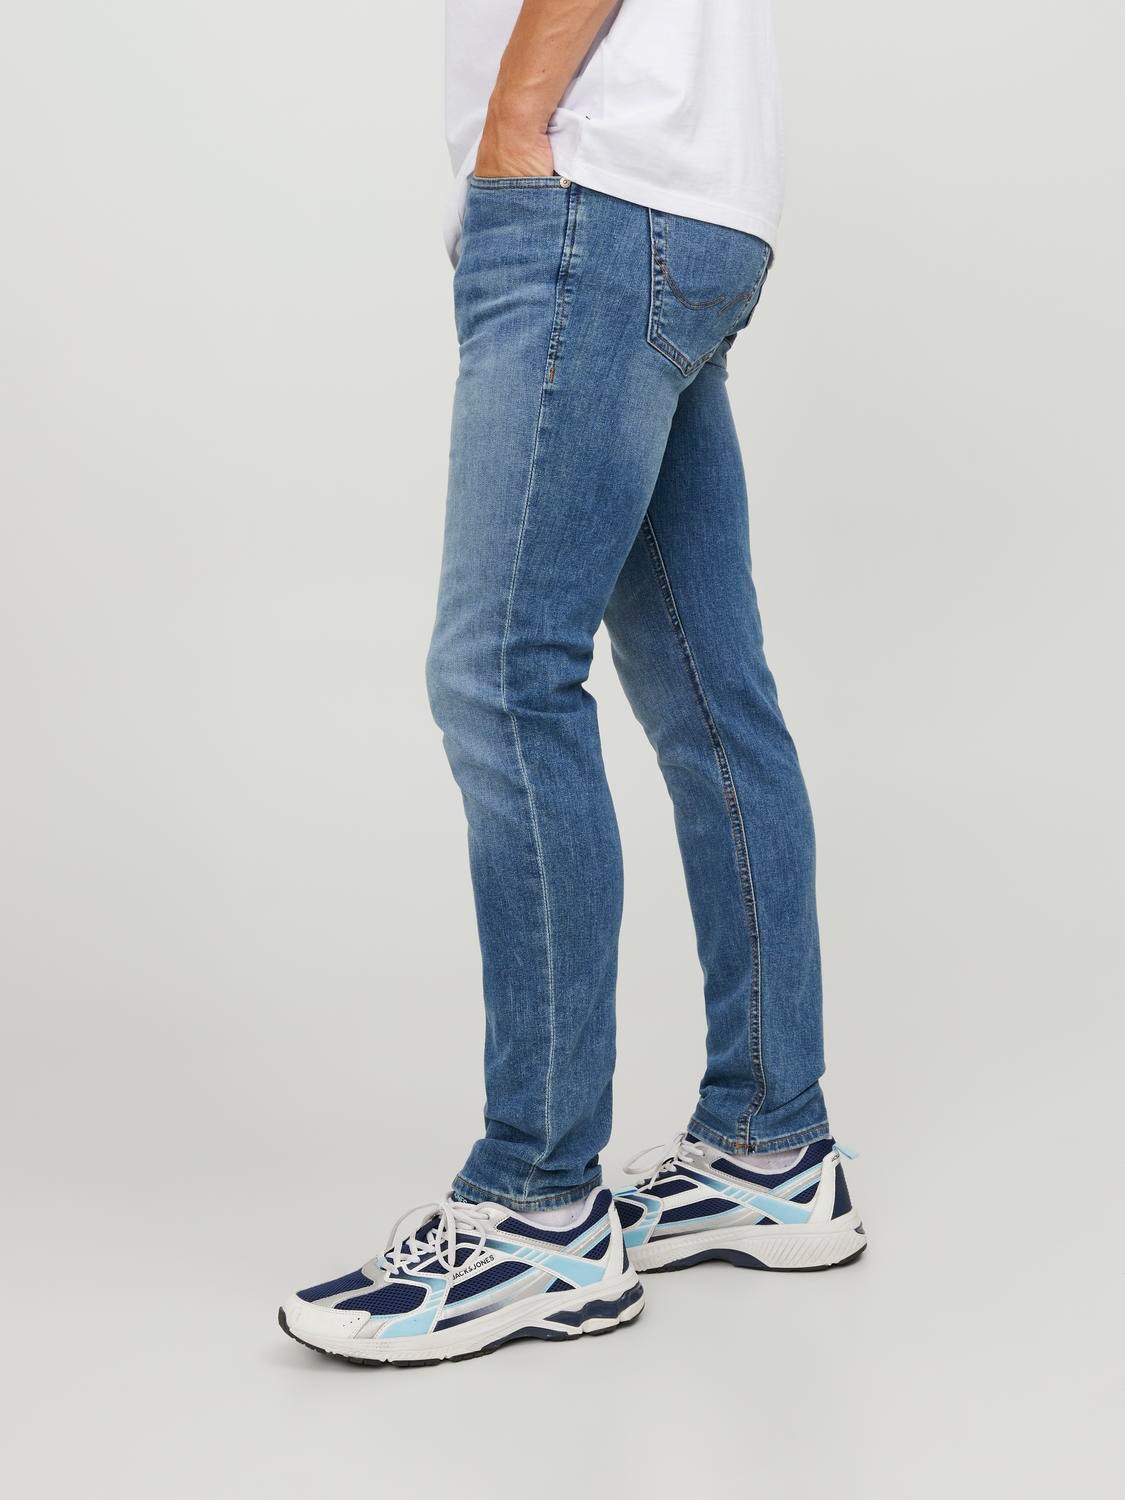 JJIGLENN JJORIGINAL AM 815 Slim fit jeans, Medium Blue